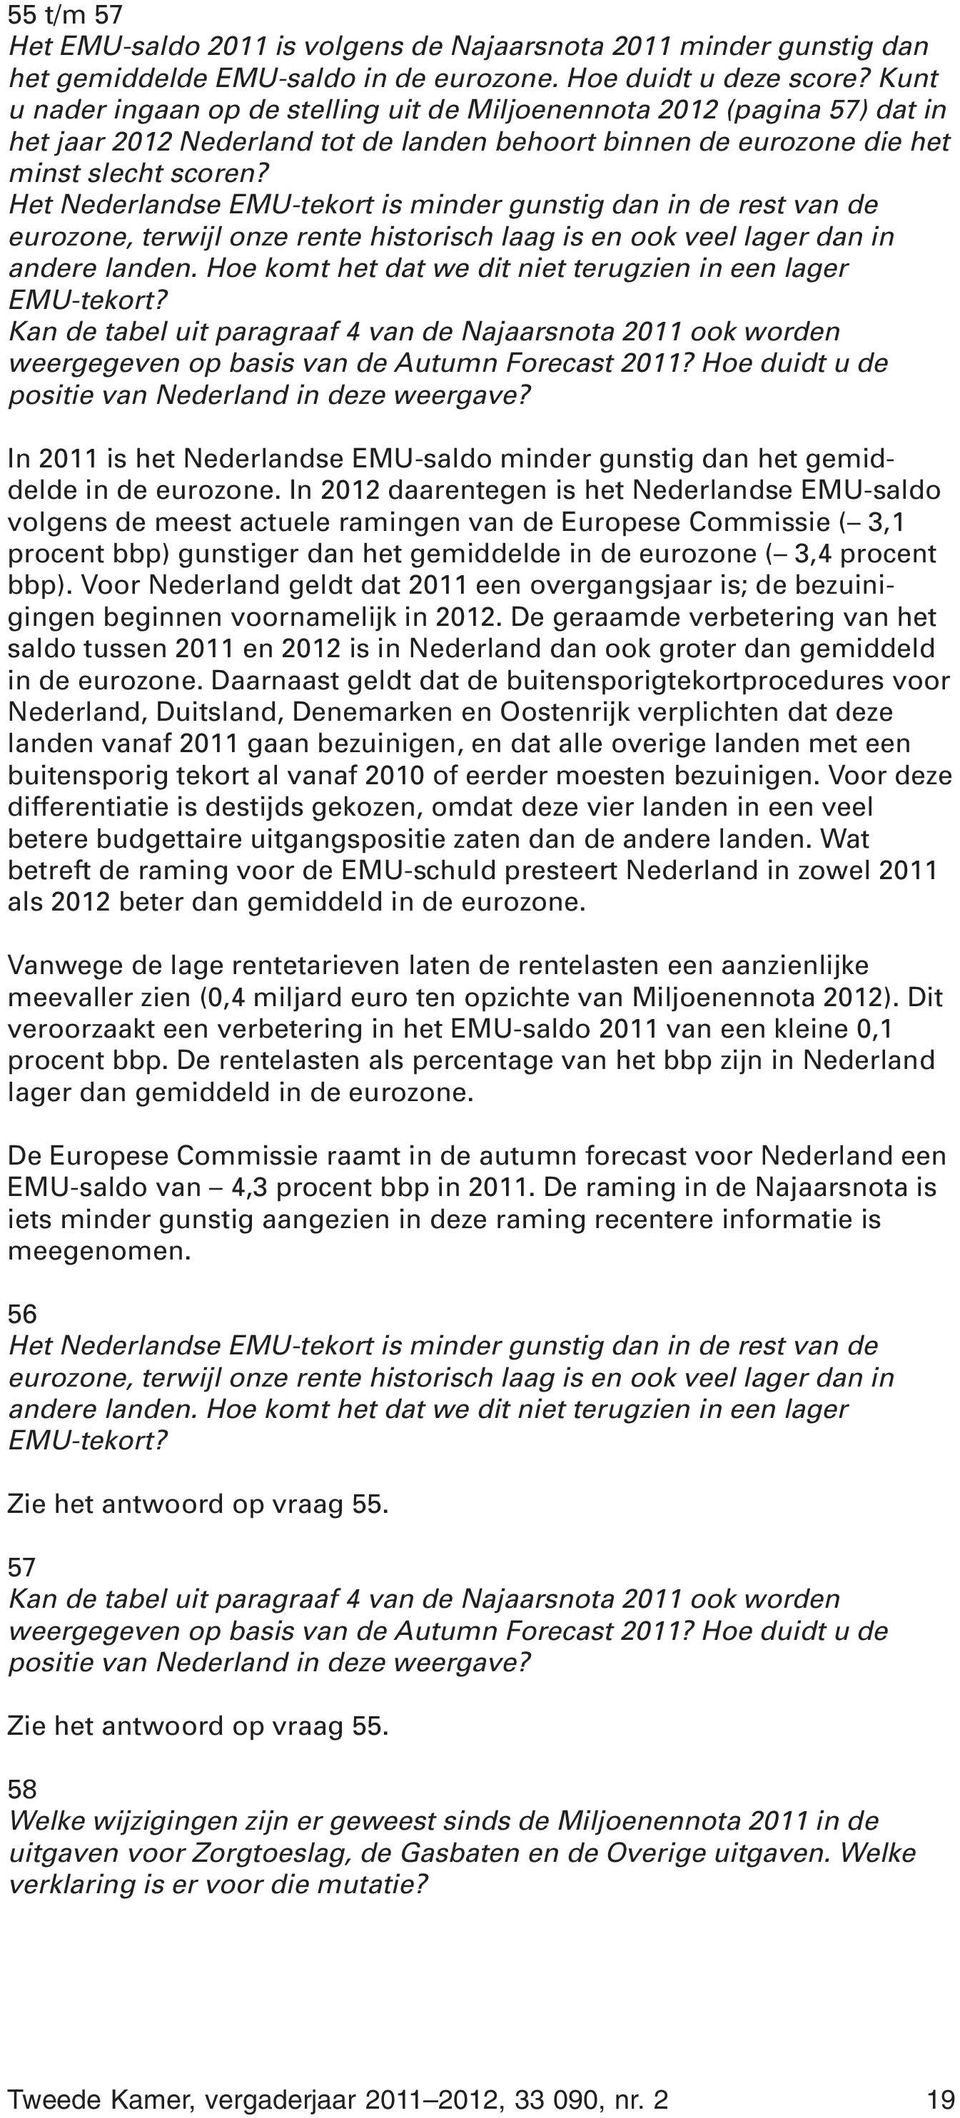 Het Nederlandse EMU-tekort is minder gunstig dan in de rest van de eurozone, terwijl onze rente historisch laag is en ook veel lager dan in andere landen.